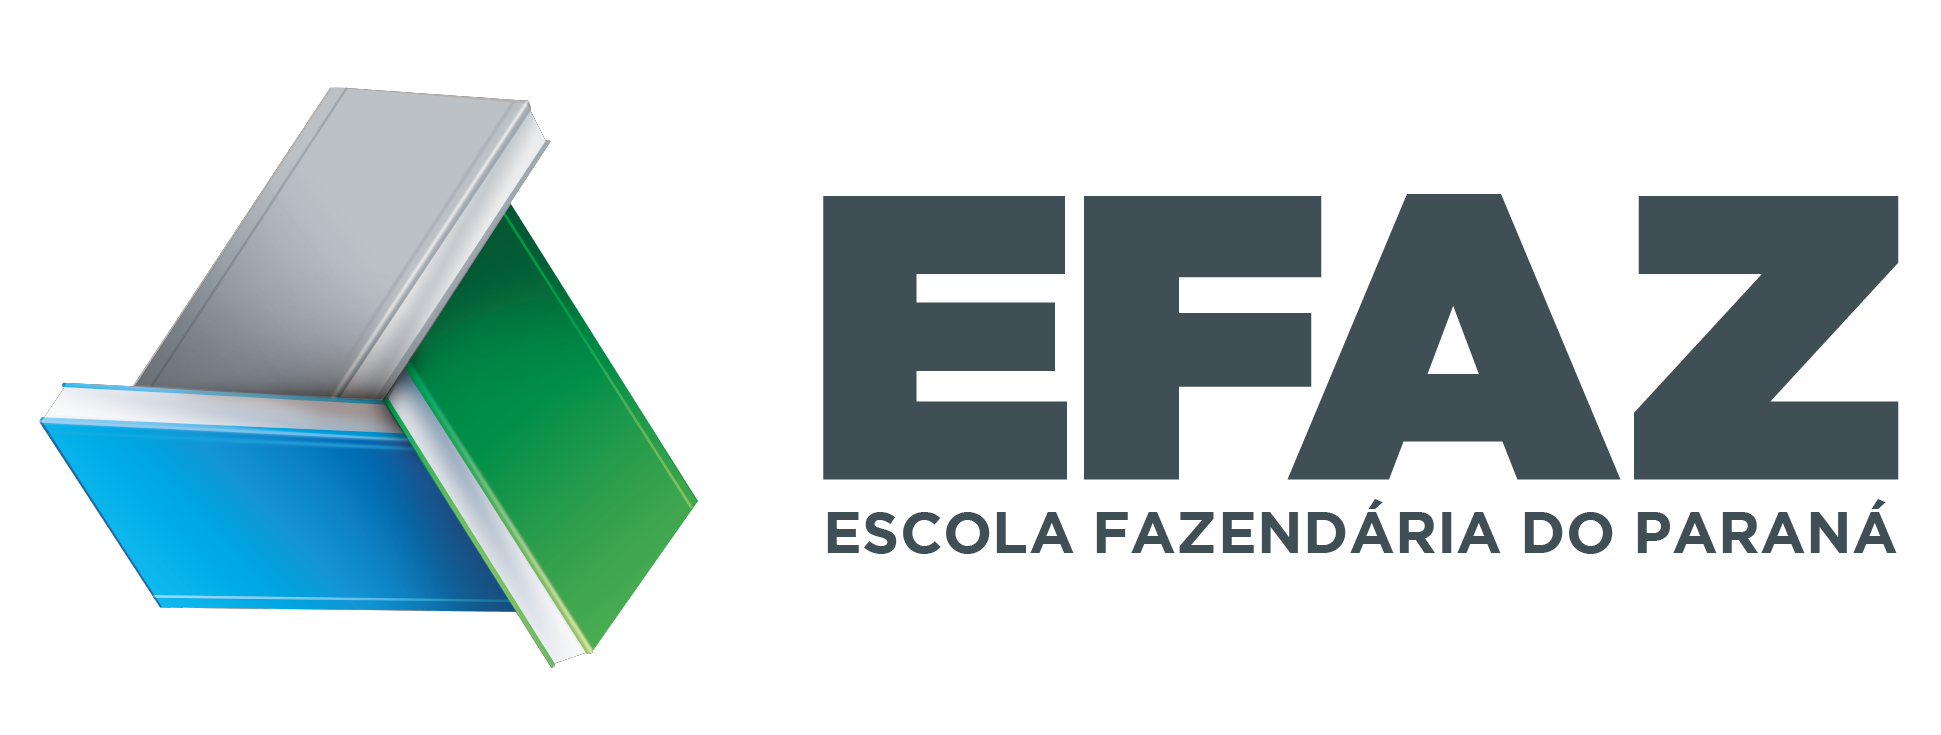 Logomarca da Escola Fazendária do Paraná